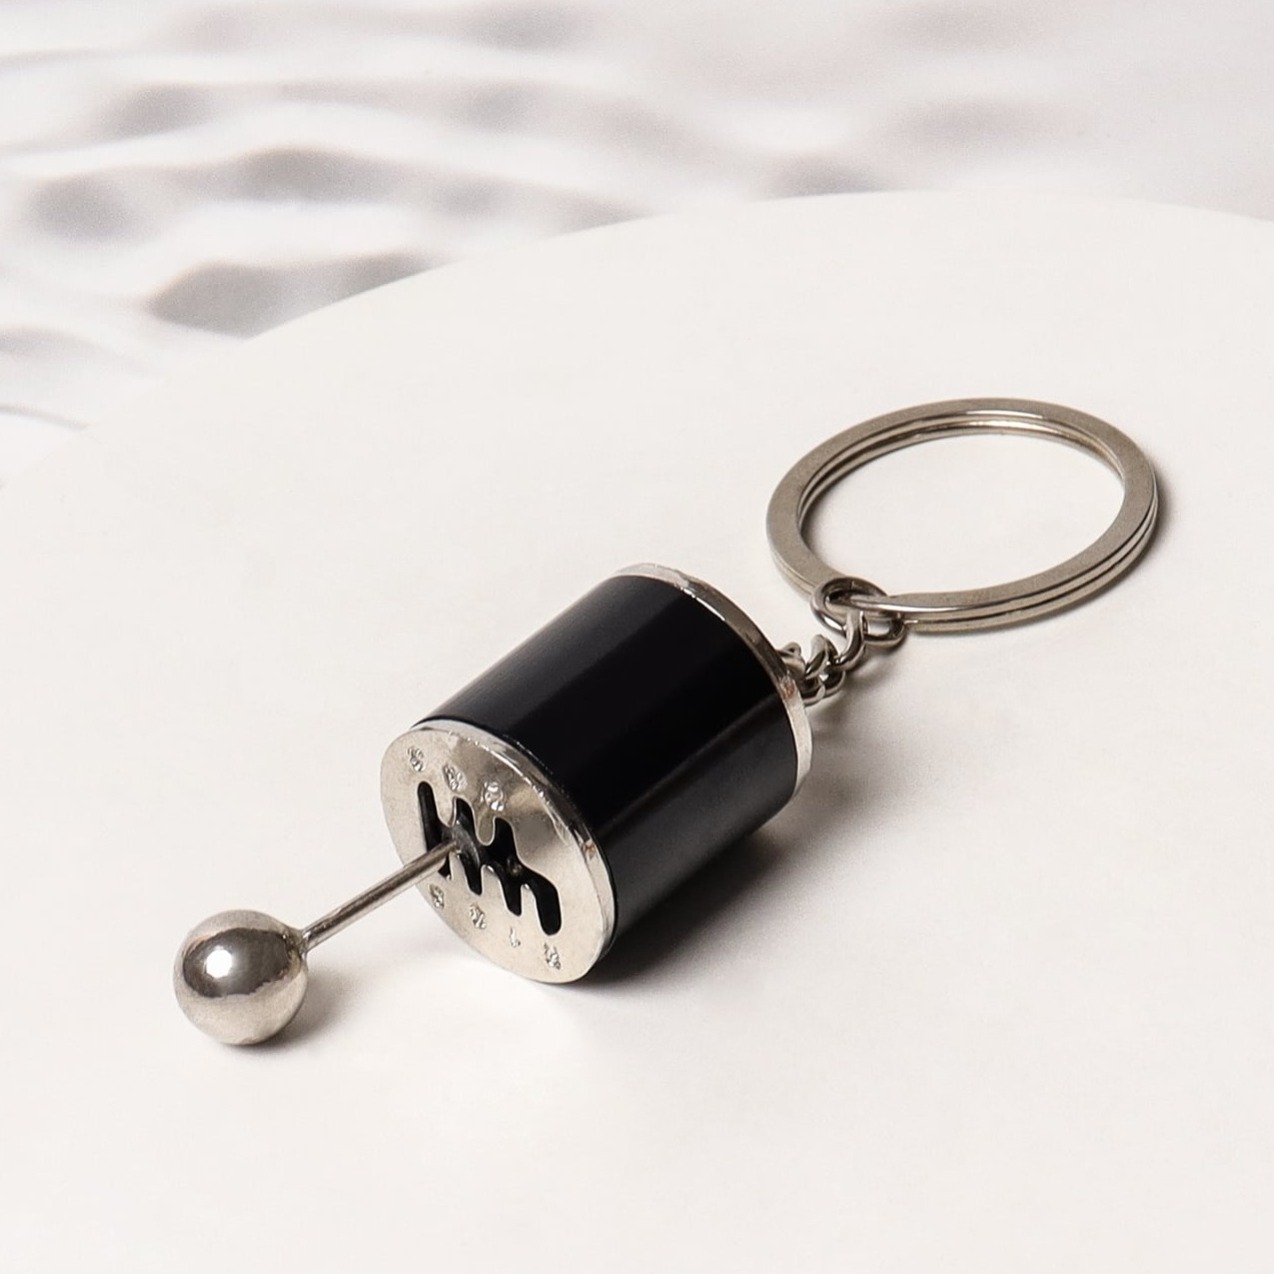 VERGASER BING 20mm Key Chain IMI : : Automotive